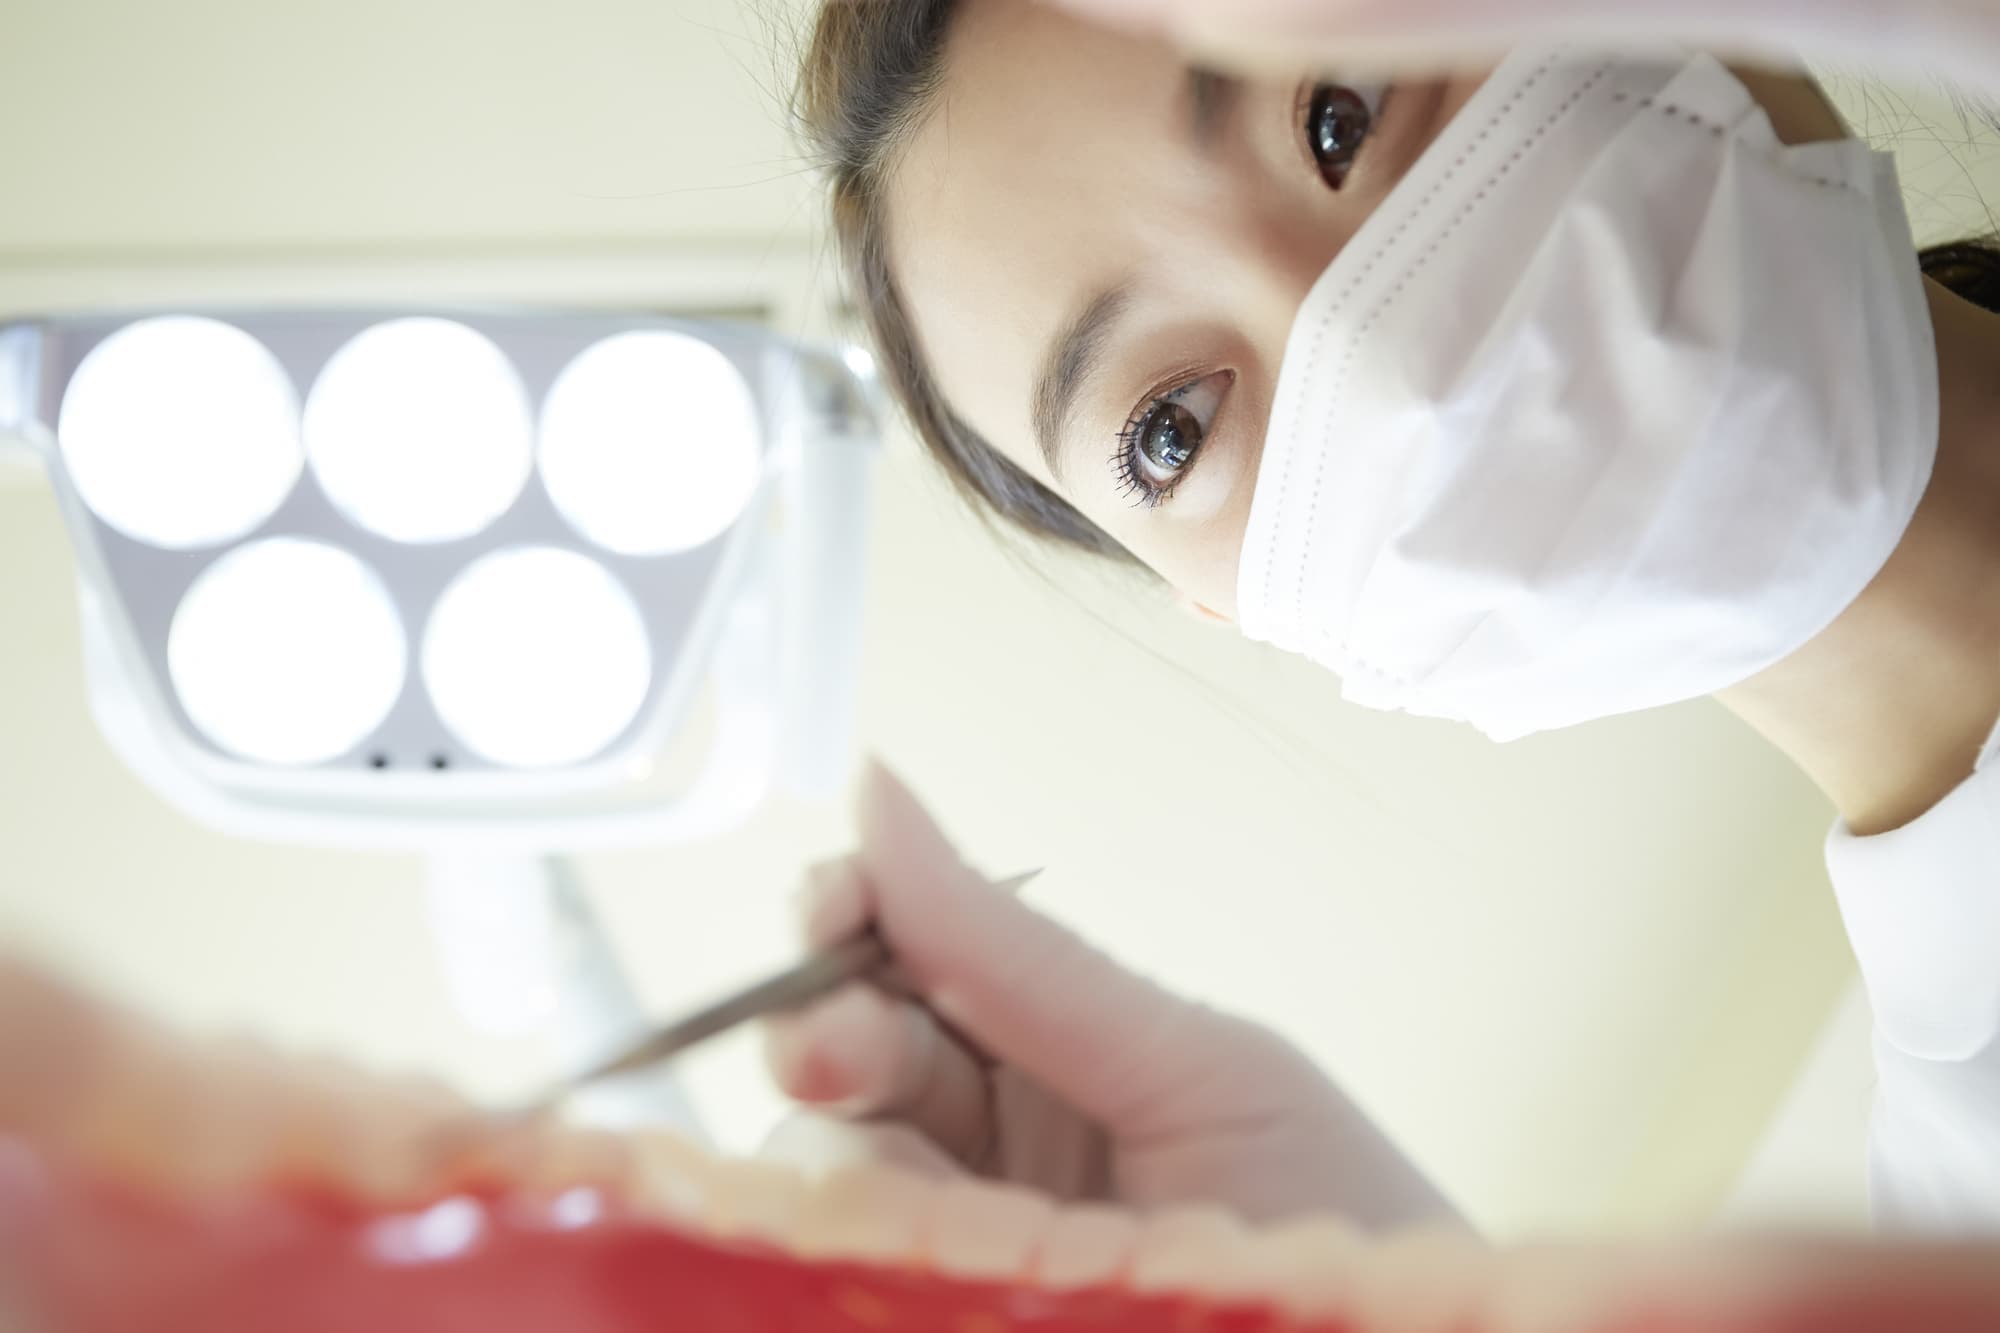 大曲歯科クリニックは残業のない働き方を推奨します。